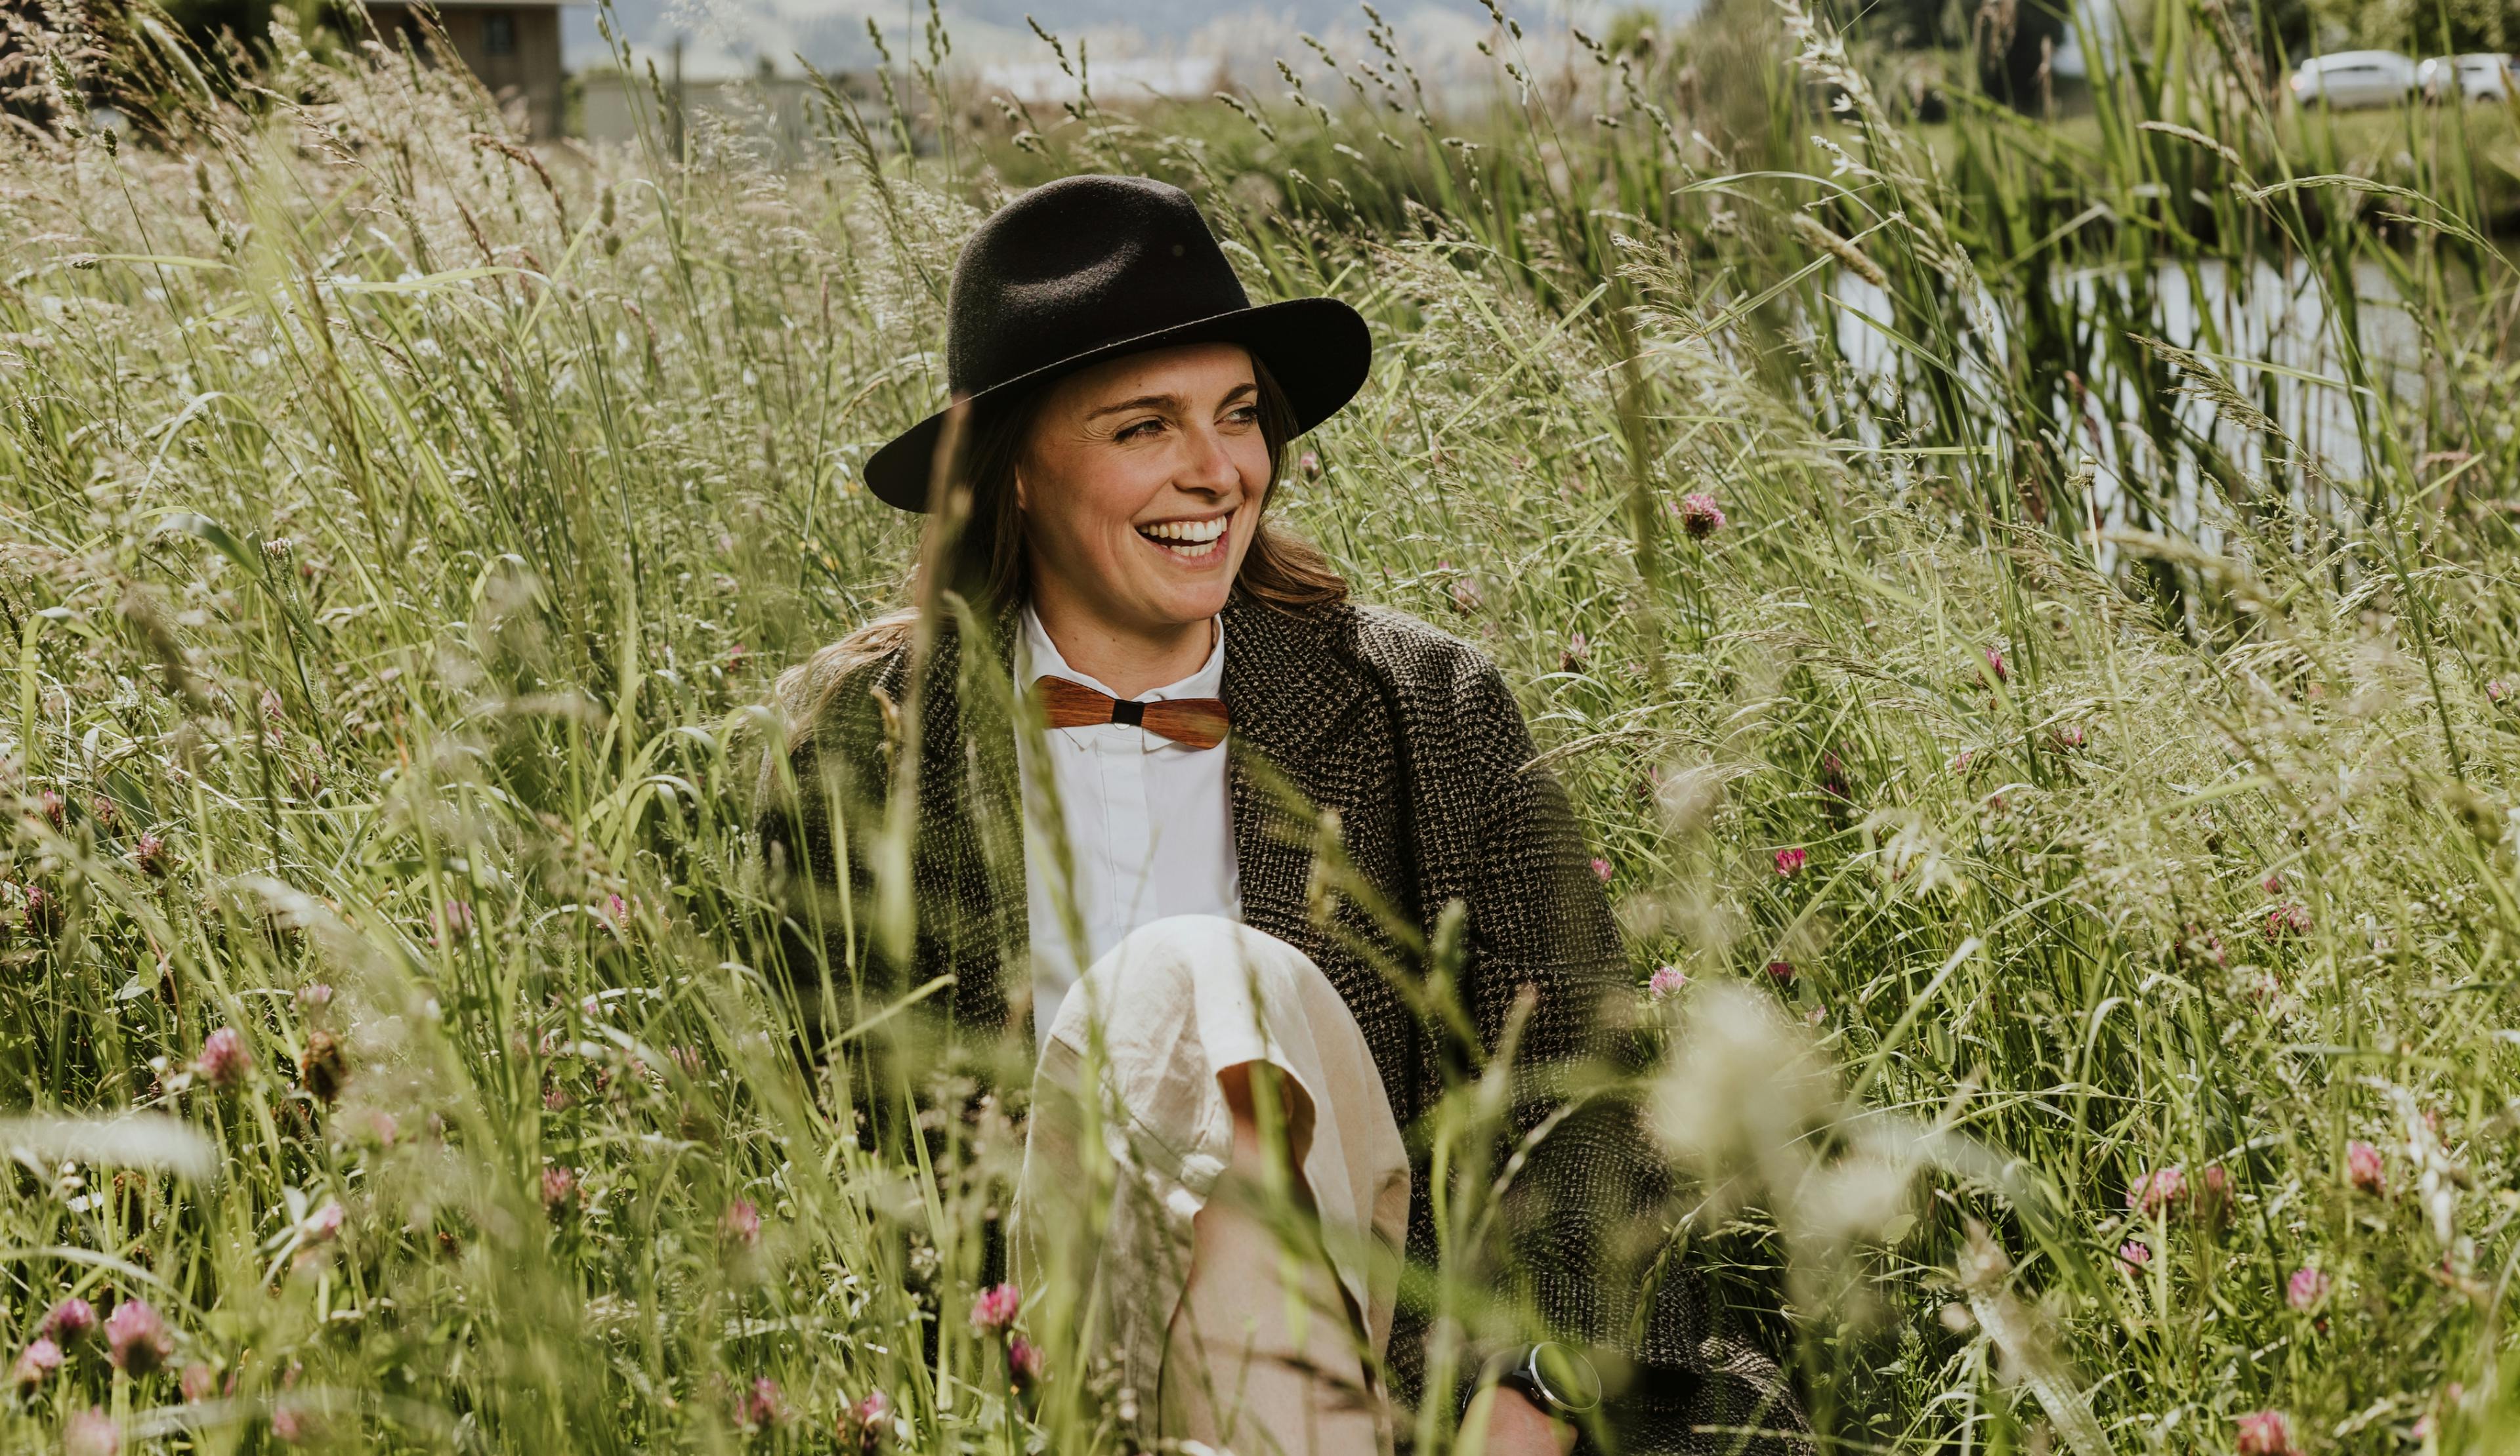 Junge Frau im Bohemian Look trägt Hut und eine schicke Holzfliege und sitzt lachend in einer wilden Wiese © good matters